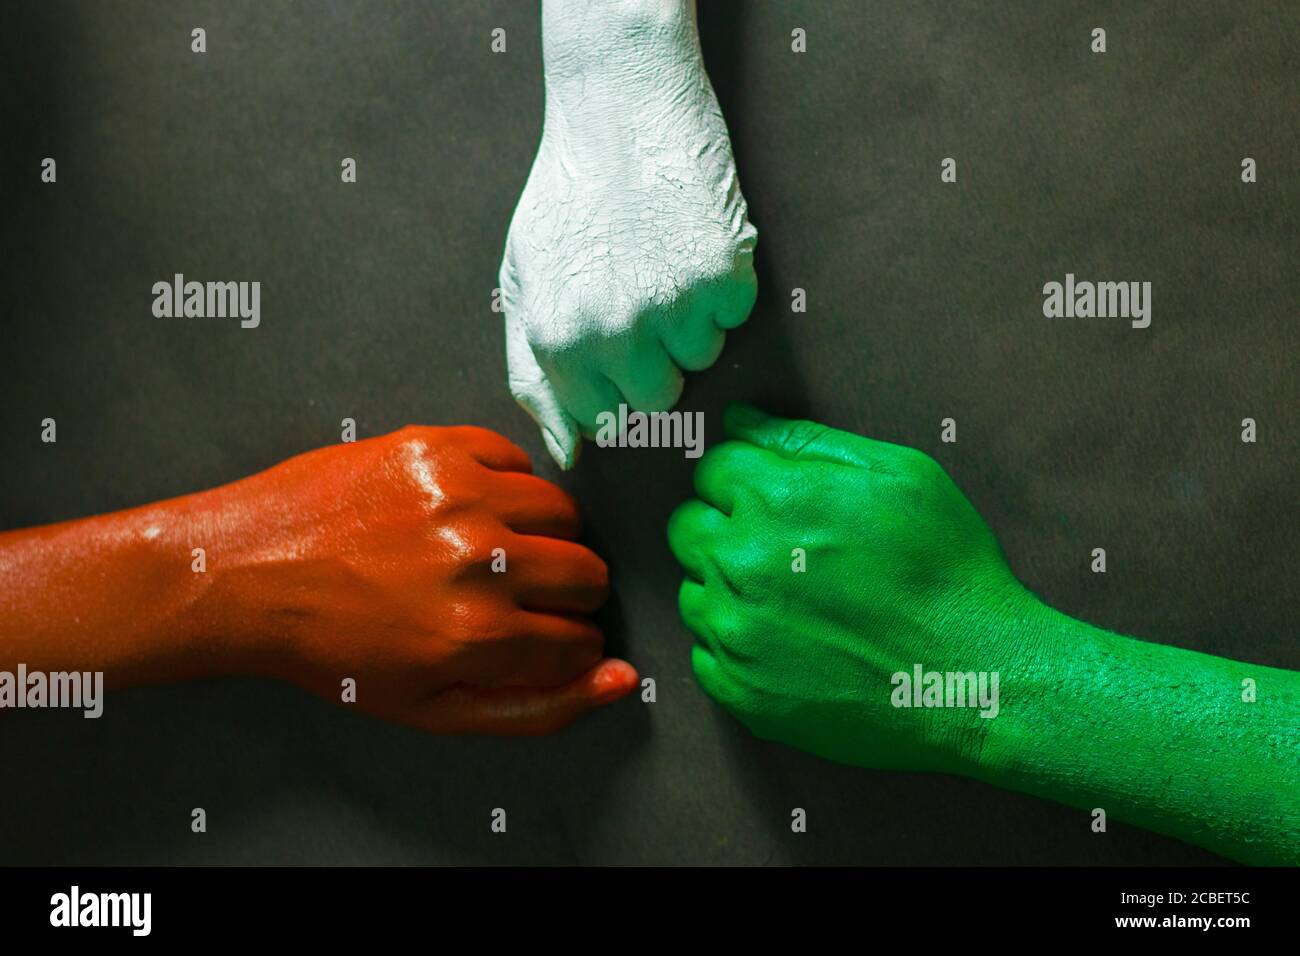 Drei Hände sind mit drei Farben bemalt, Safran, weiß und grün, um tricolor indische Nationalflagge darzustellen.15 August Unabhängigkeitstag Indien. Stockfoto